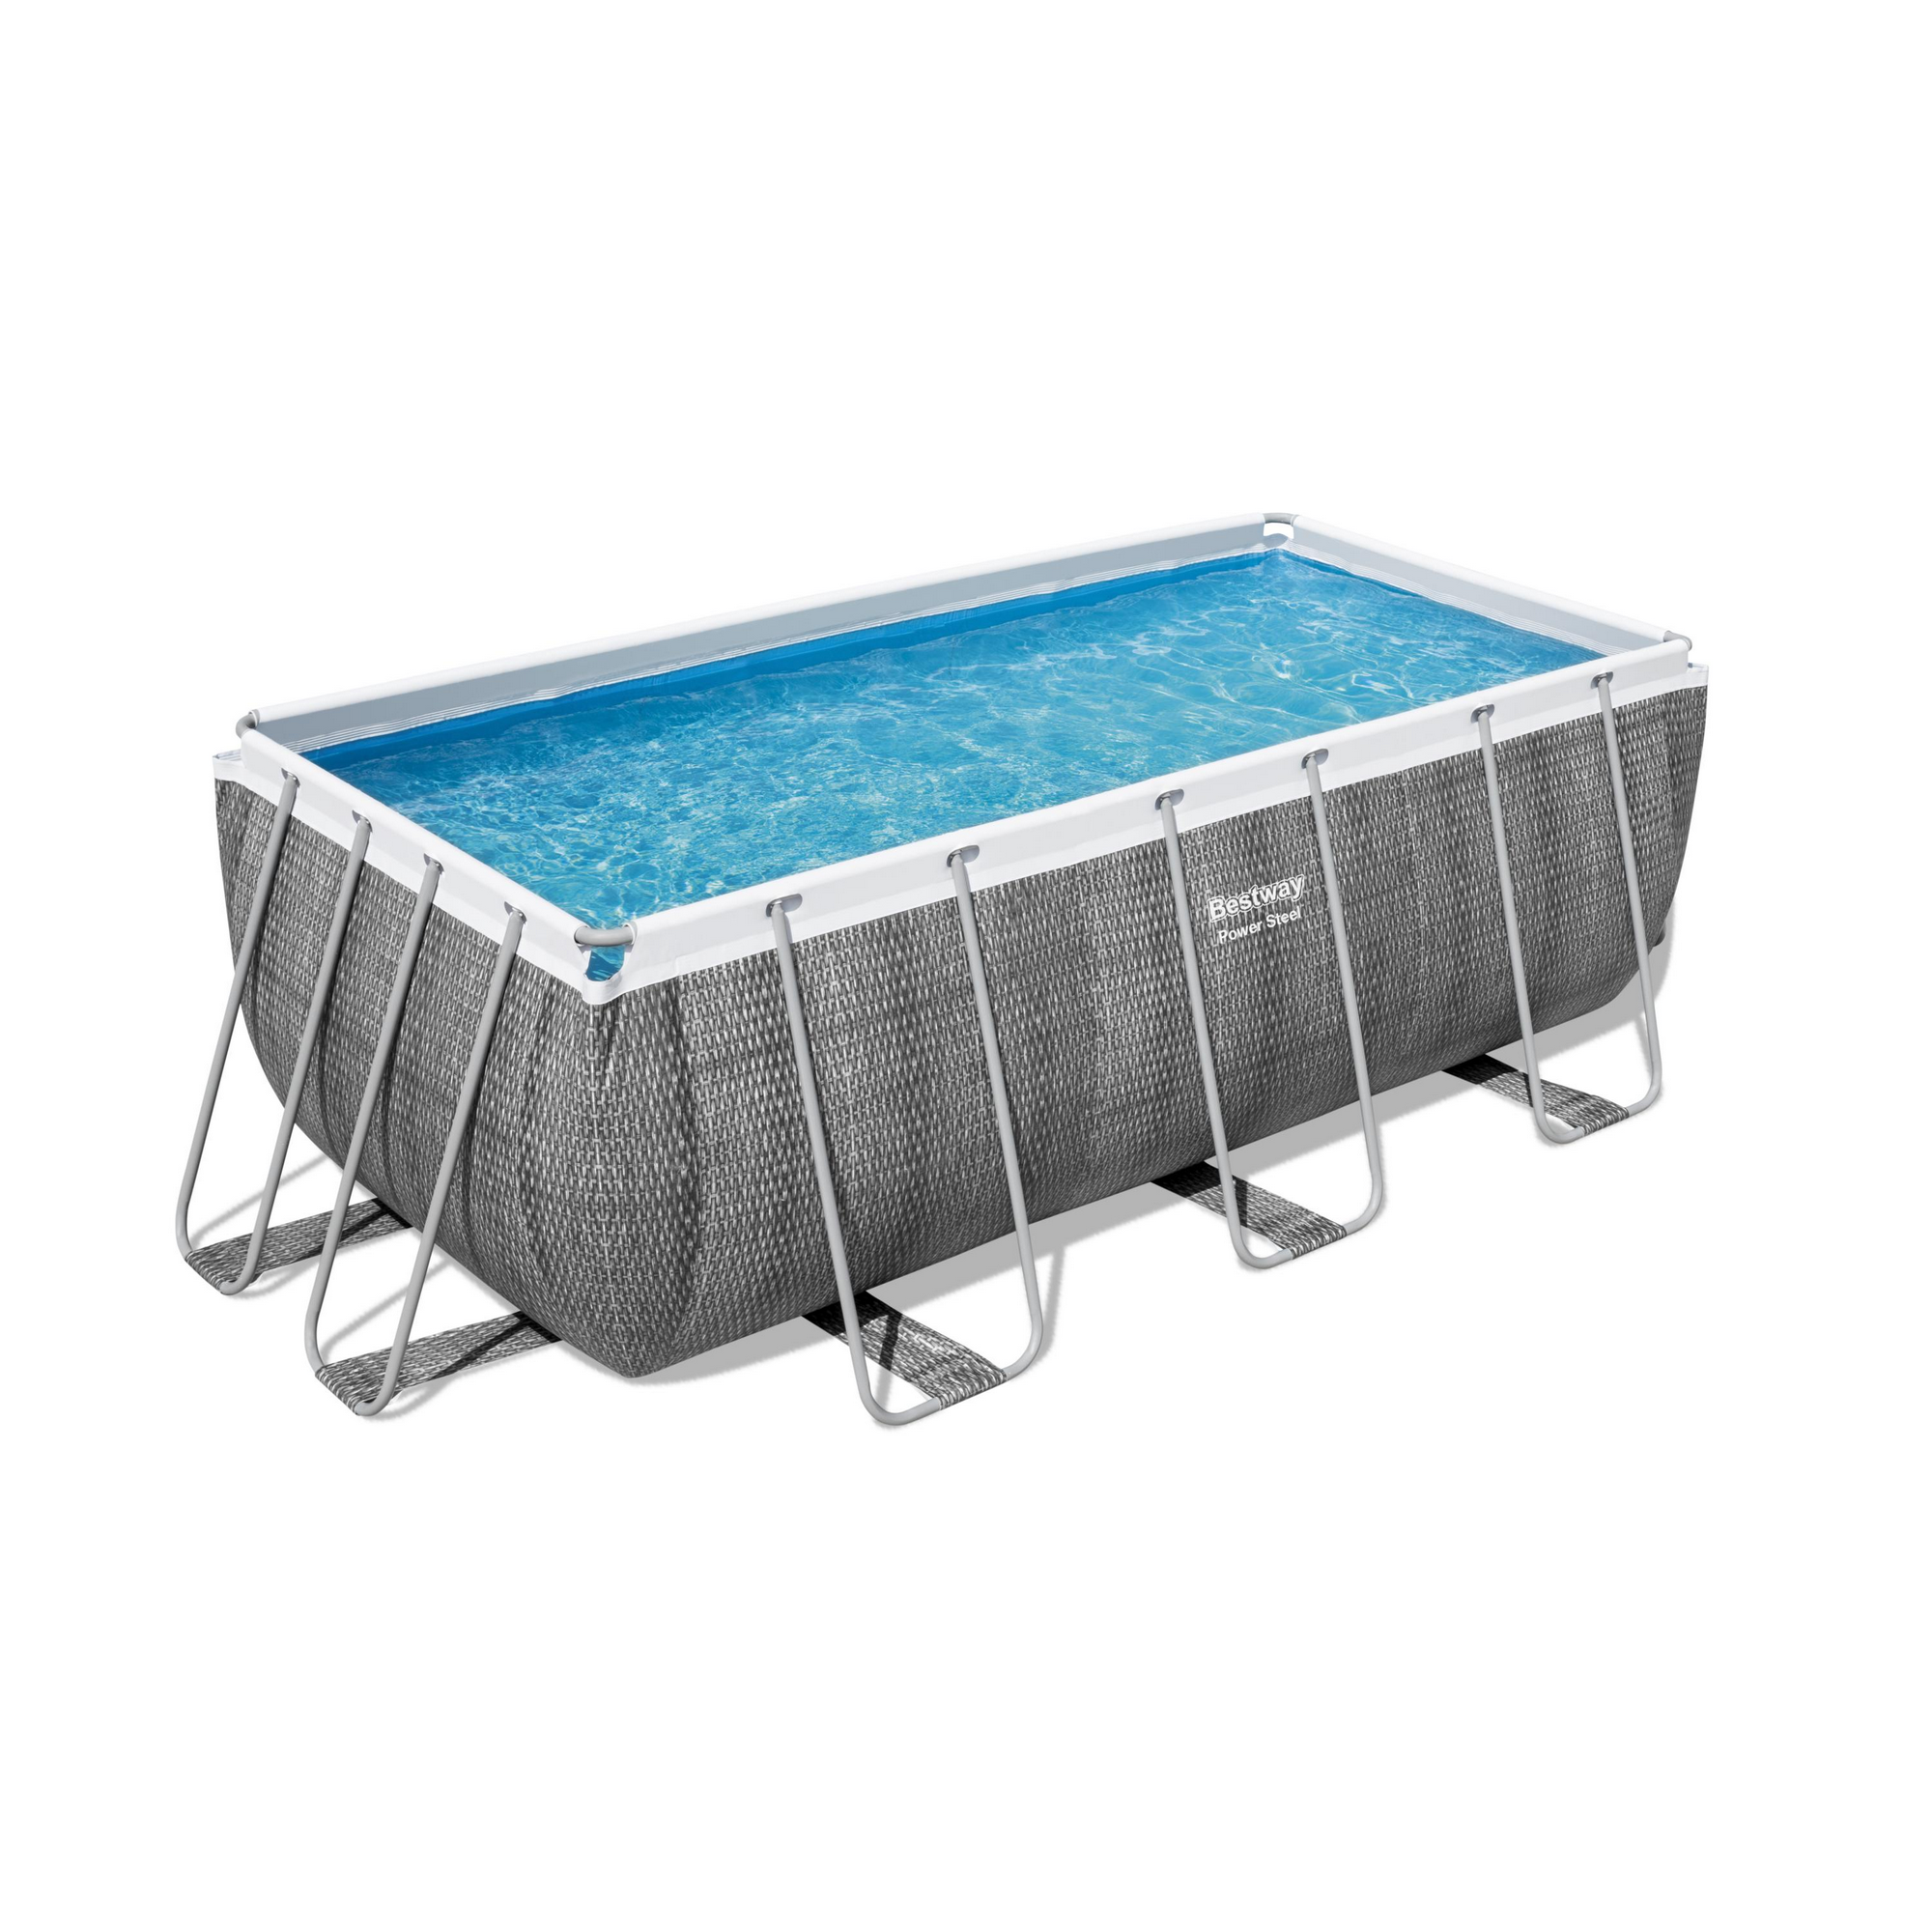 Frame-Pool-Set 'Power Steel' 412 x 201 x 122 cm mit Sicherheitsleiter und Kartuschenfilter + product picture